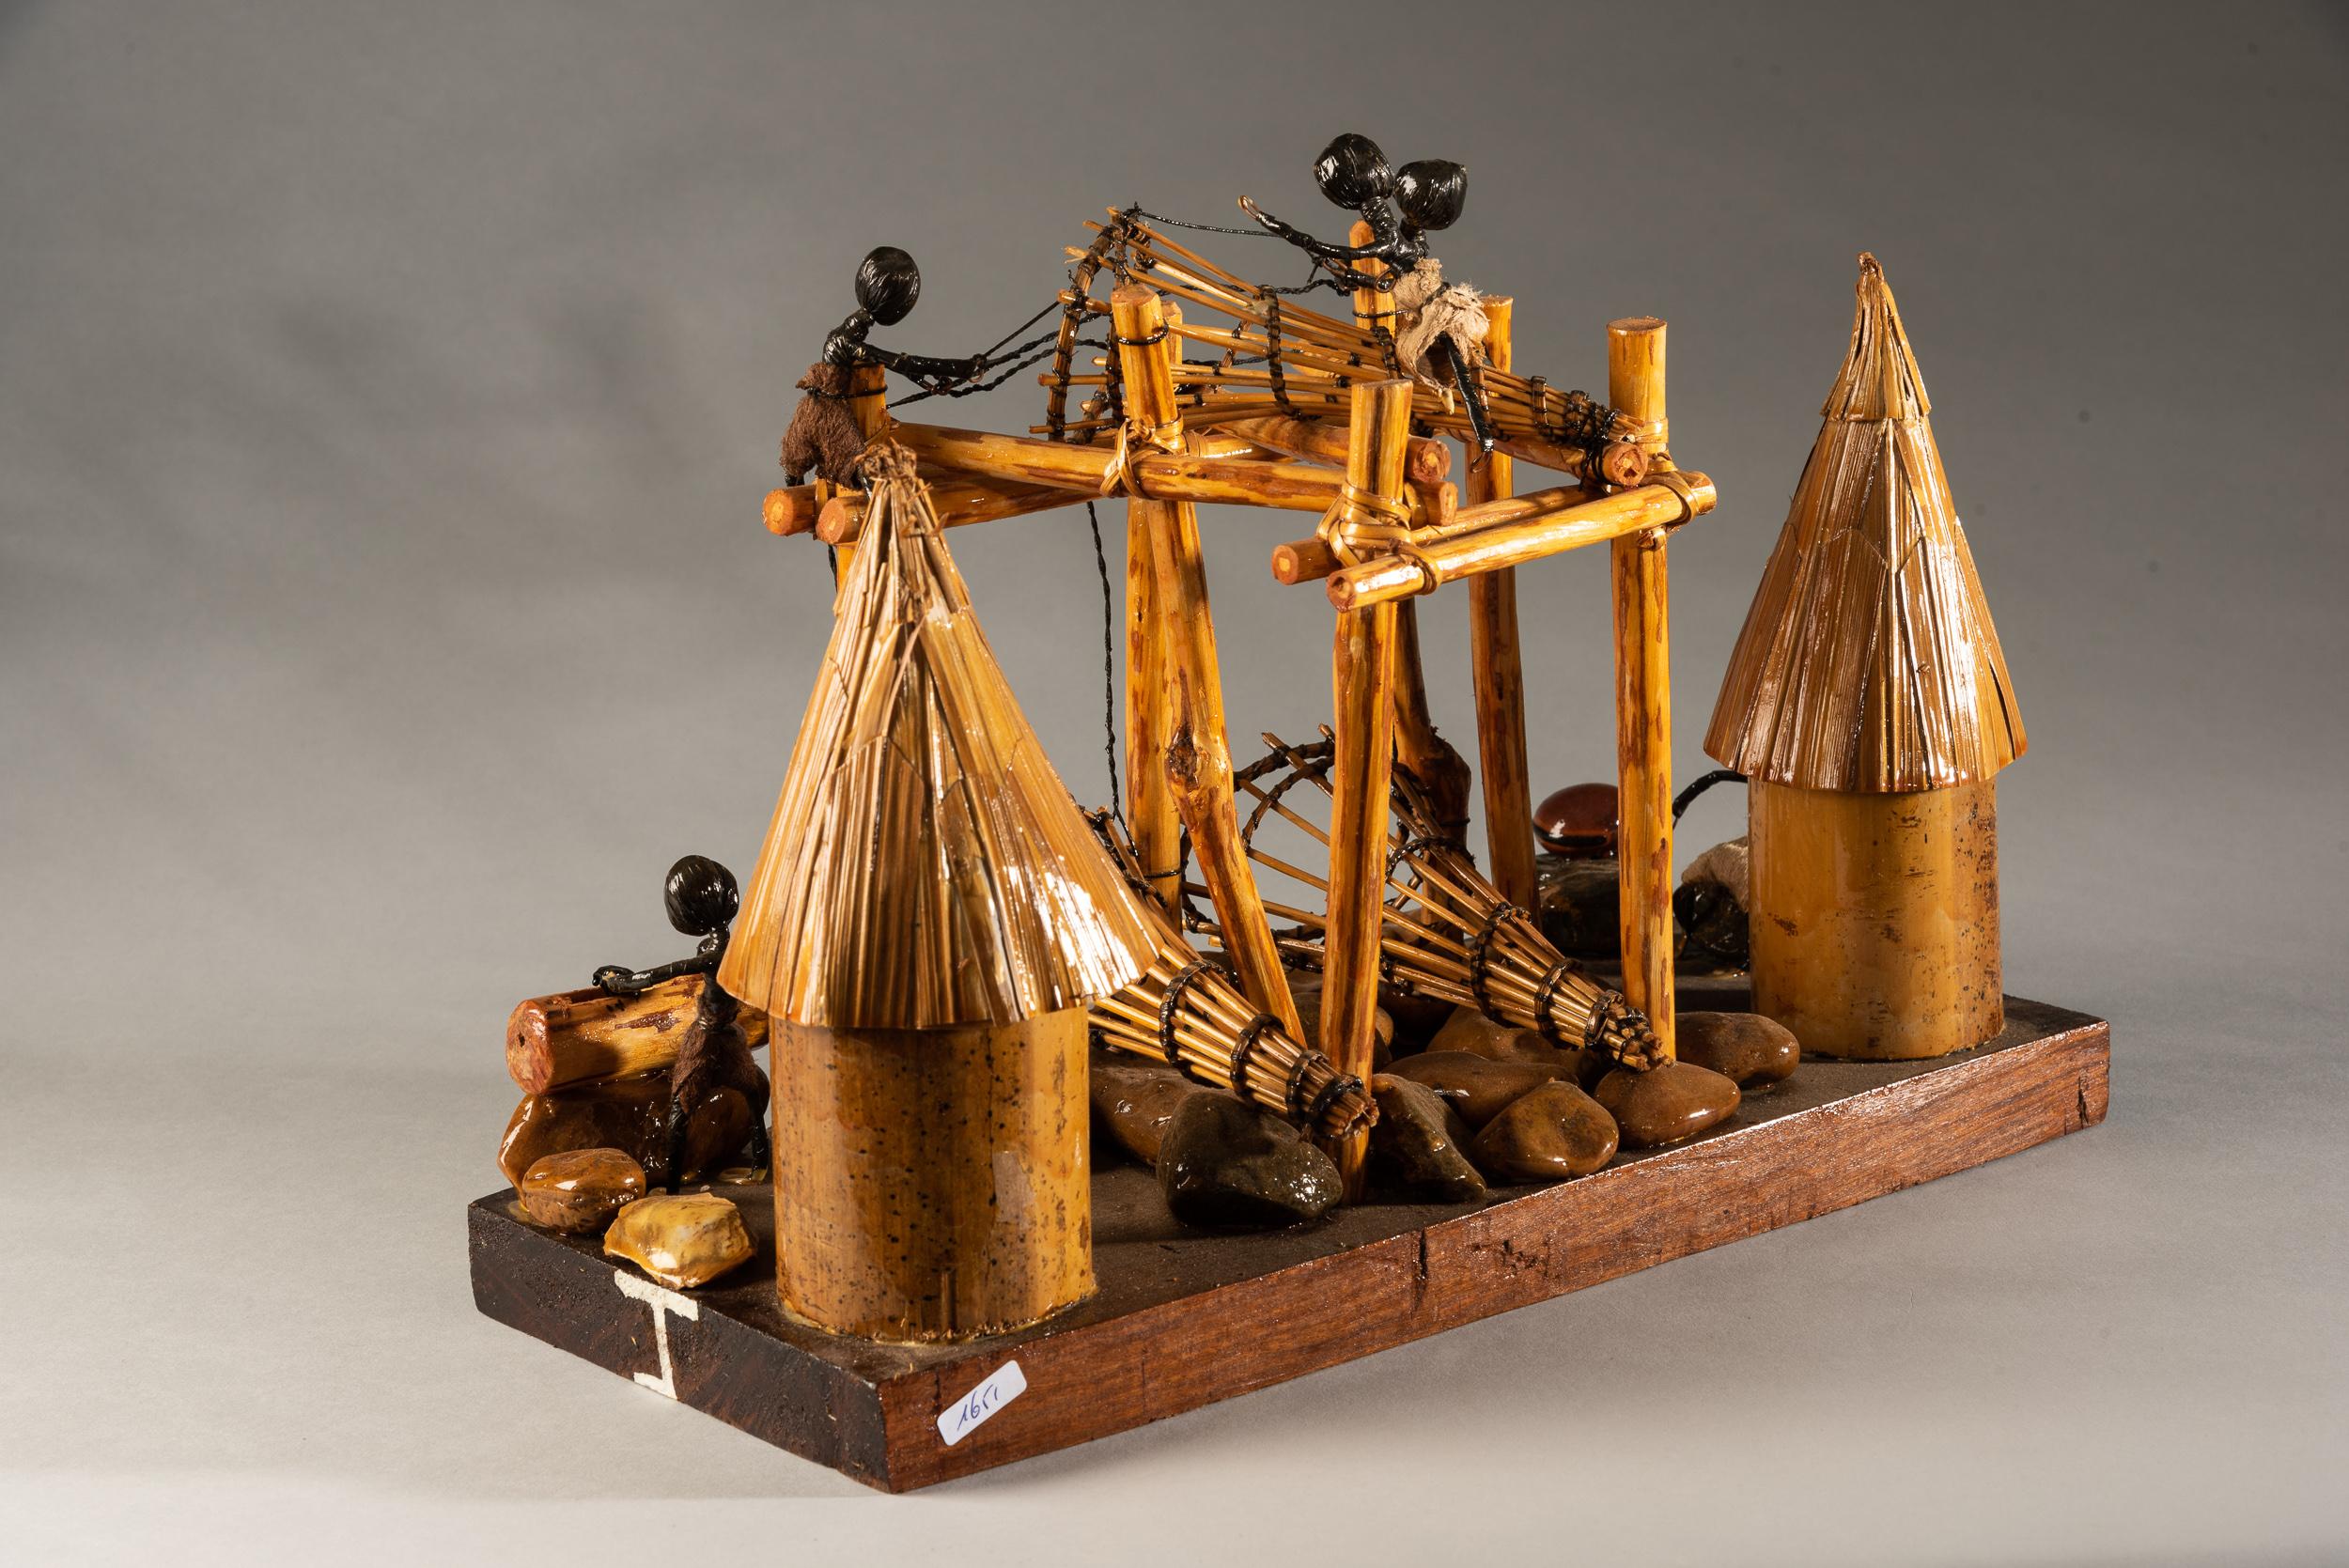 Dies ist ein Touristenmodell einer Wagenia-Fischeranlage aus Holz, Draht und kleinen Steinen. Das Modell steht auf einem Holzsockel; auf der Vorderseite ist 